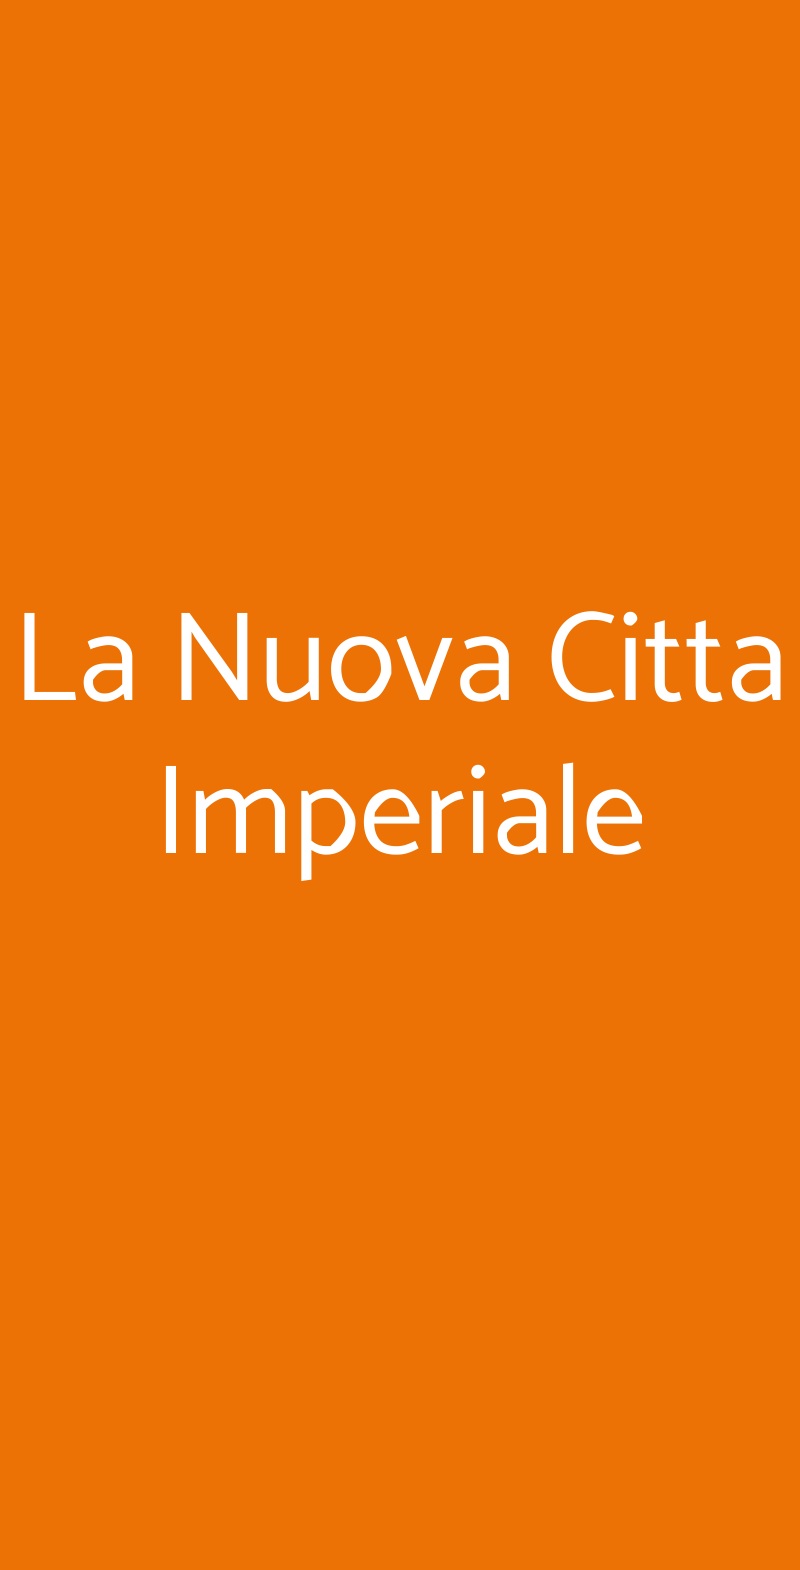 La Nuova Citta Imperiale Firenze menù 1 pagina